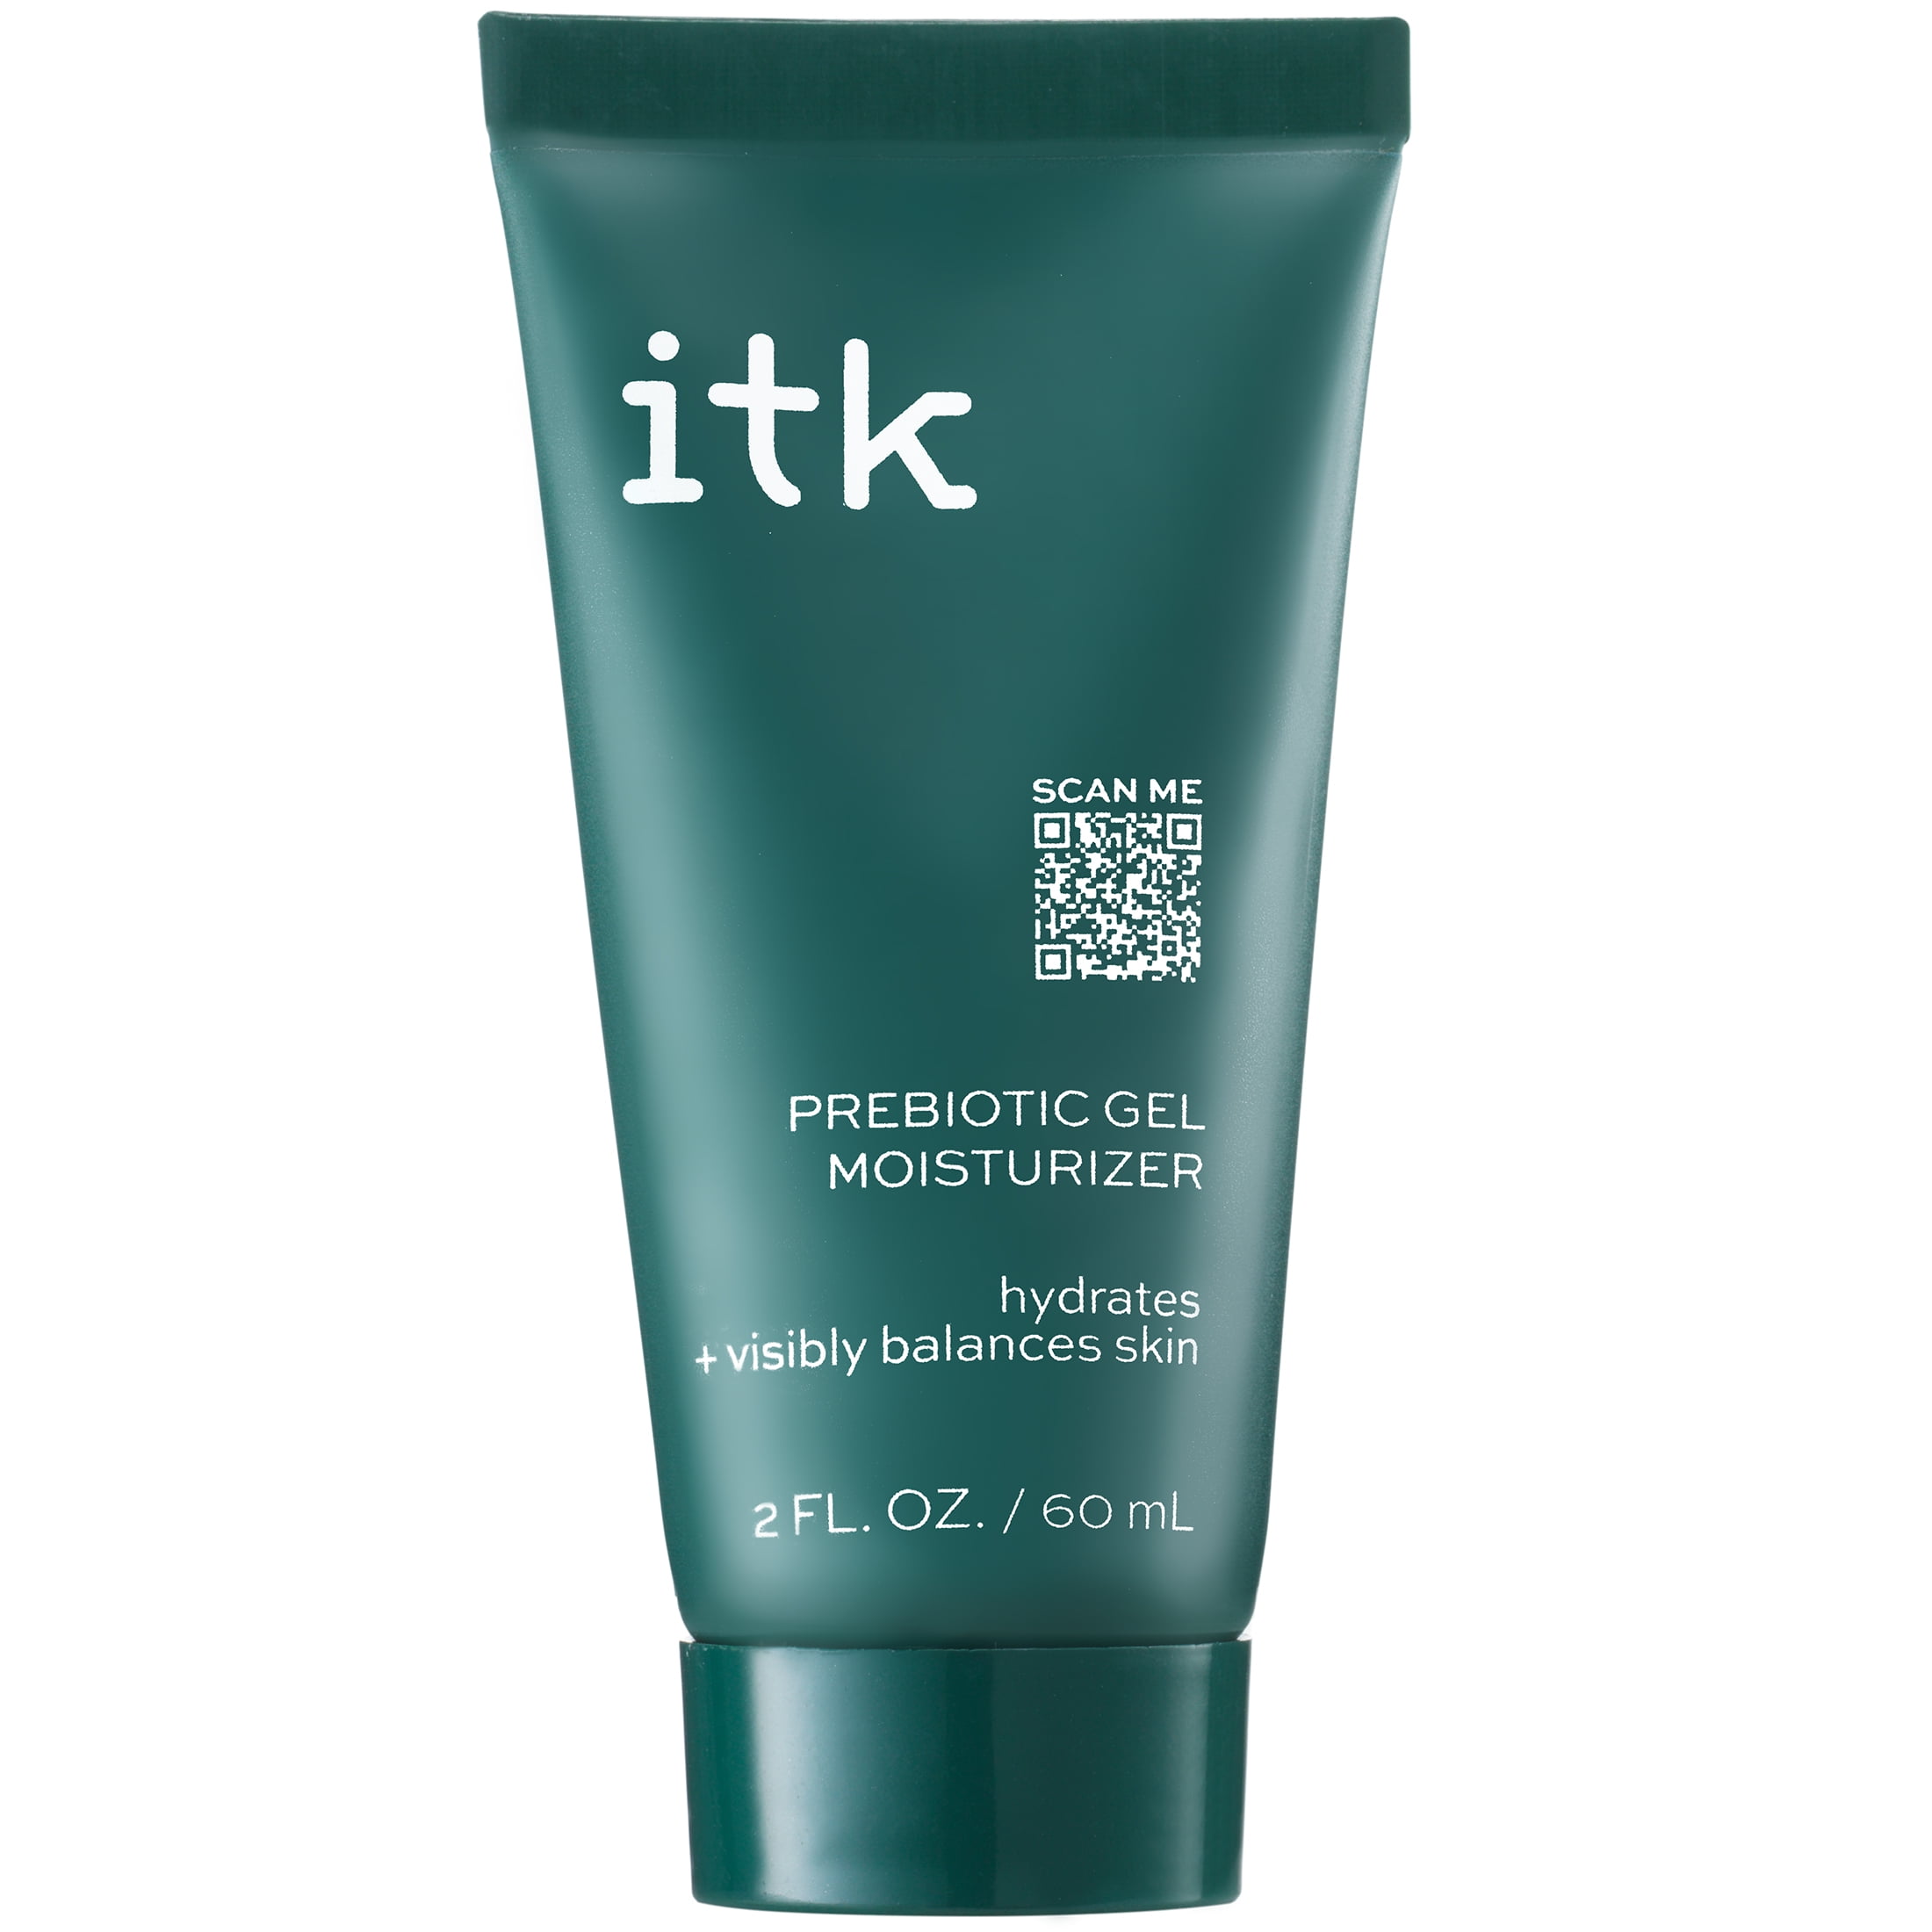 ITK Prebiotic Gel Moisturizer with Niacinamide + Squalane for Acne-Prone, Oily Skin, 2 oz - Walmart.com